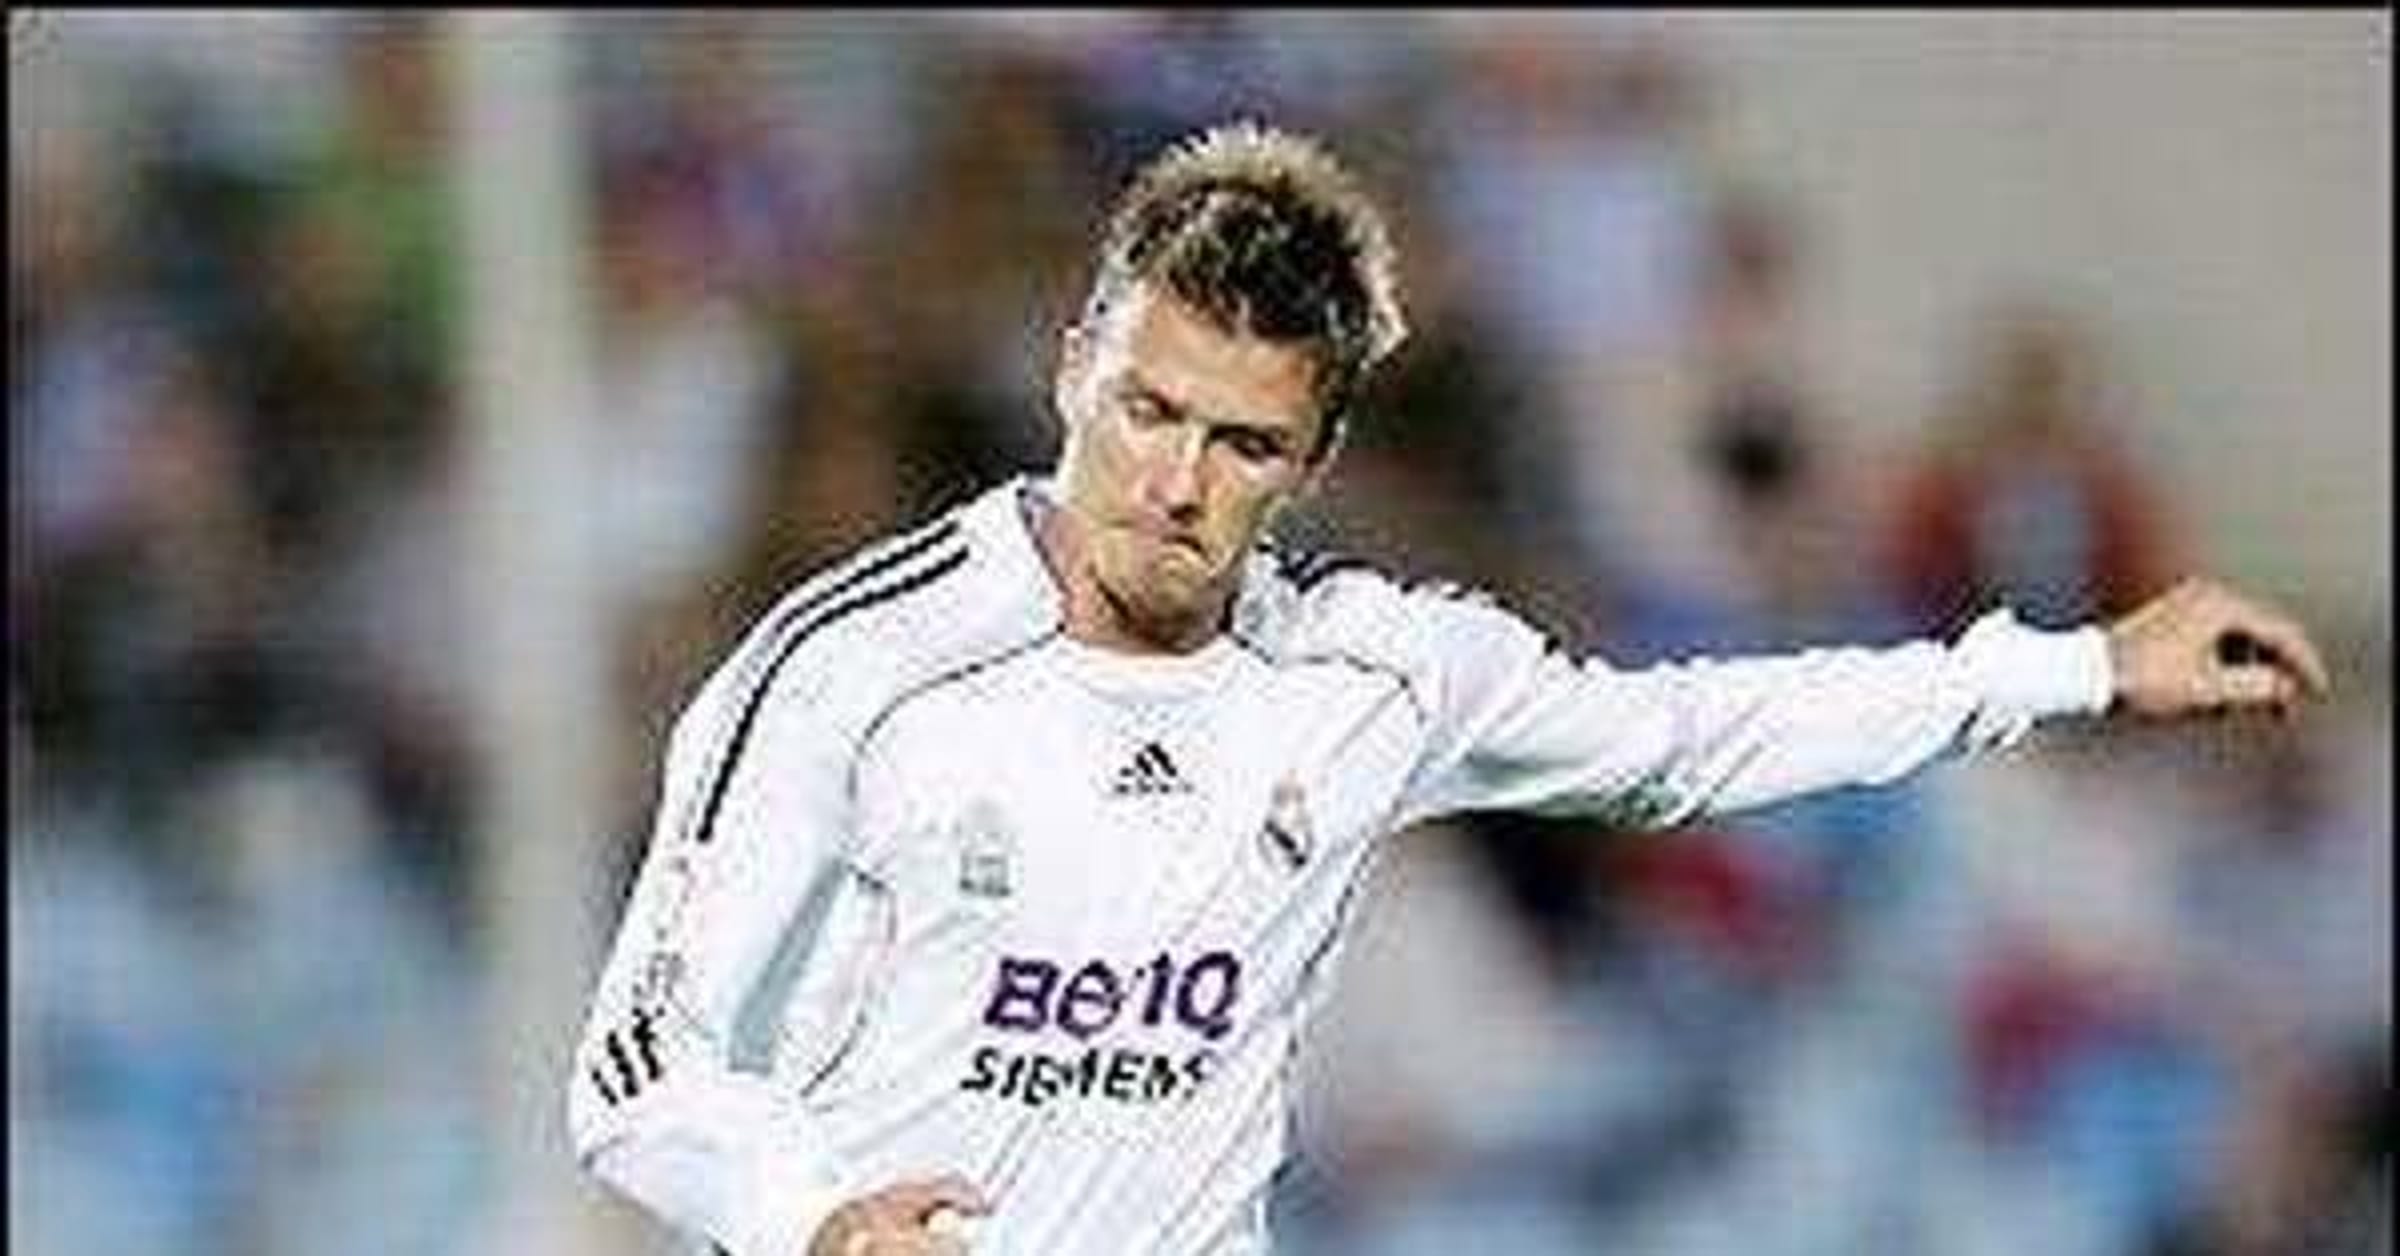 Weverton (footballer, born 1987) - Wikipedia